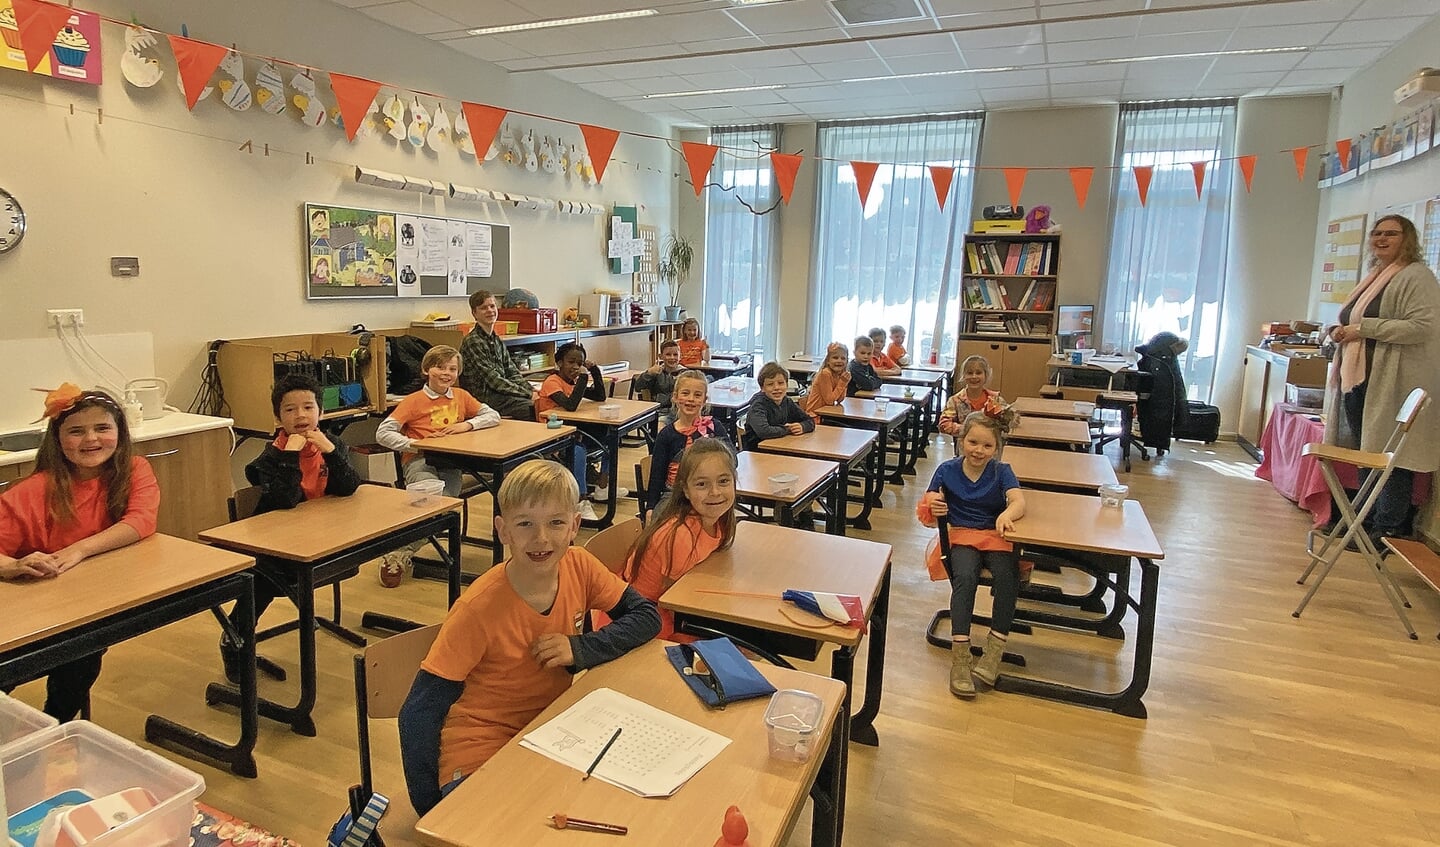 Groep 3 van de Timotheus school in Linschoten had er zin in.